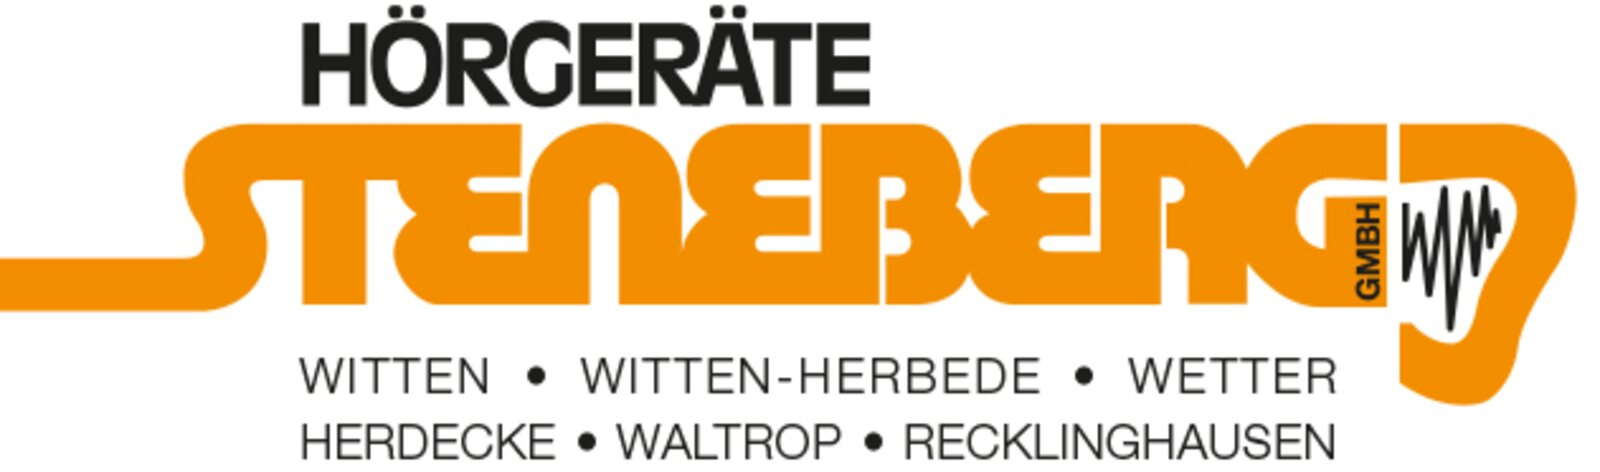 Steneberg Logo mit Adressen 3 A.jpg